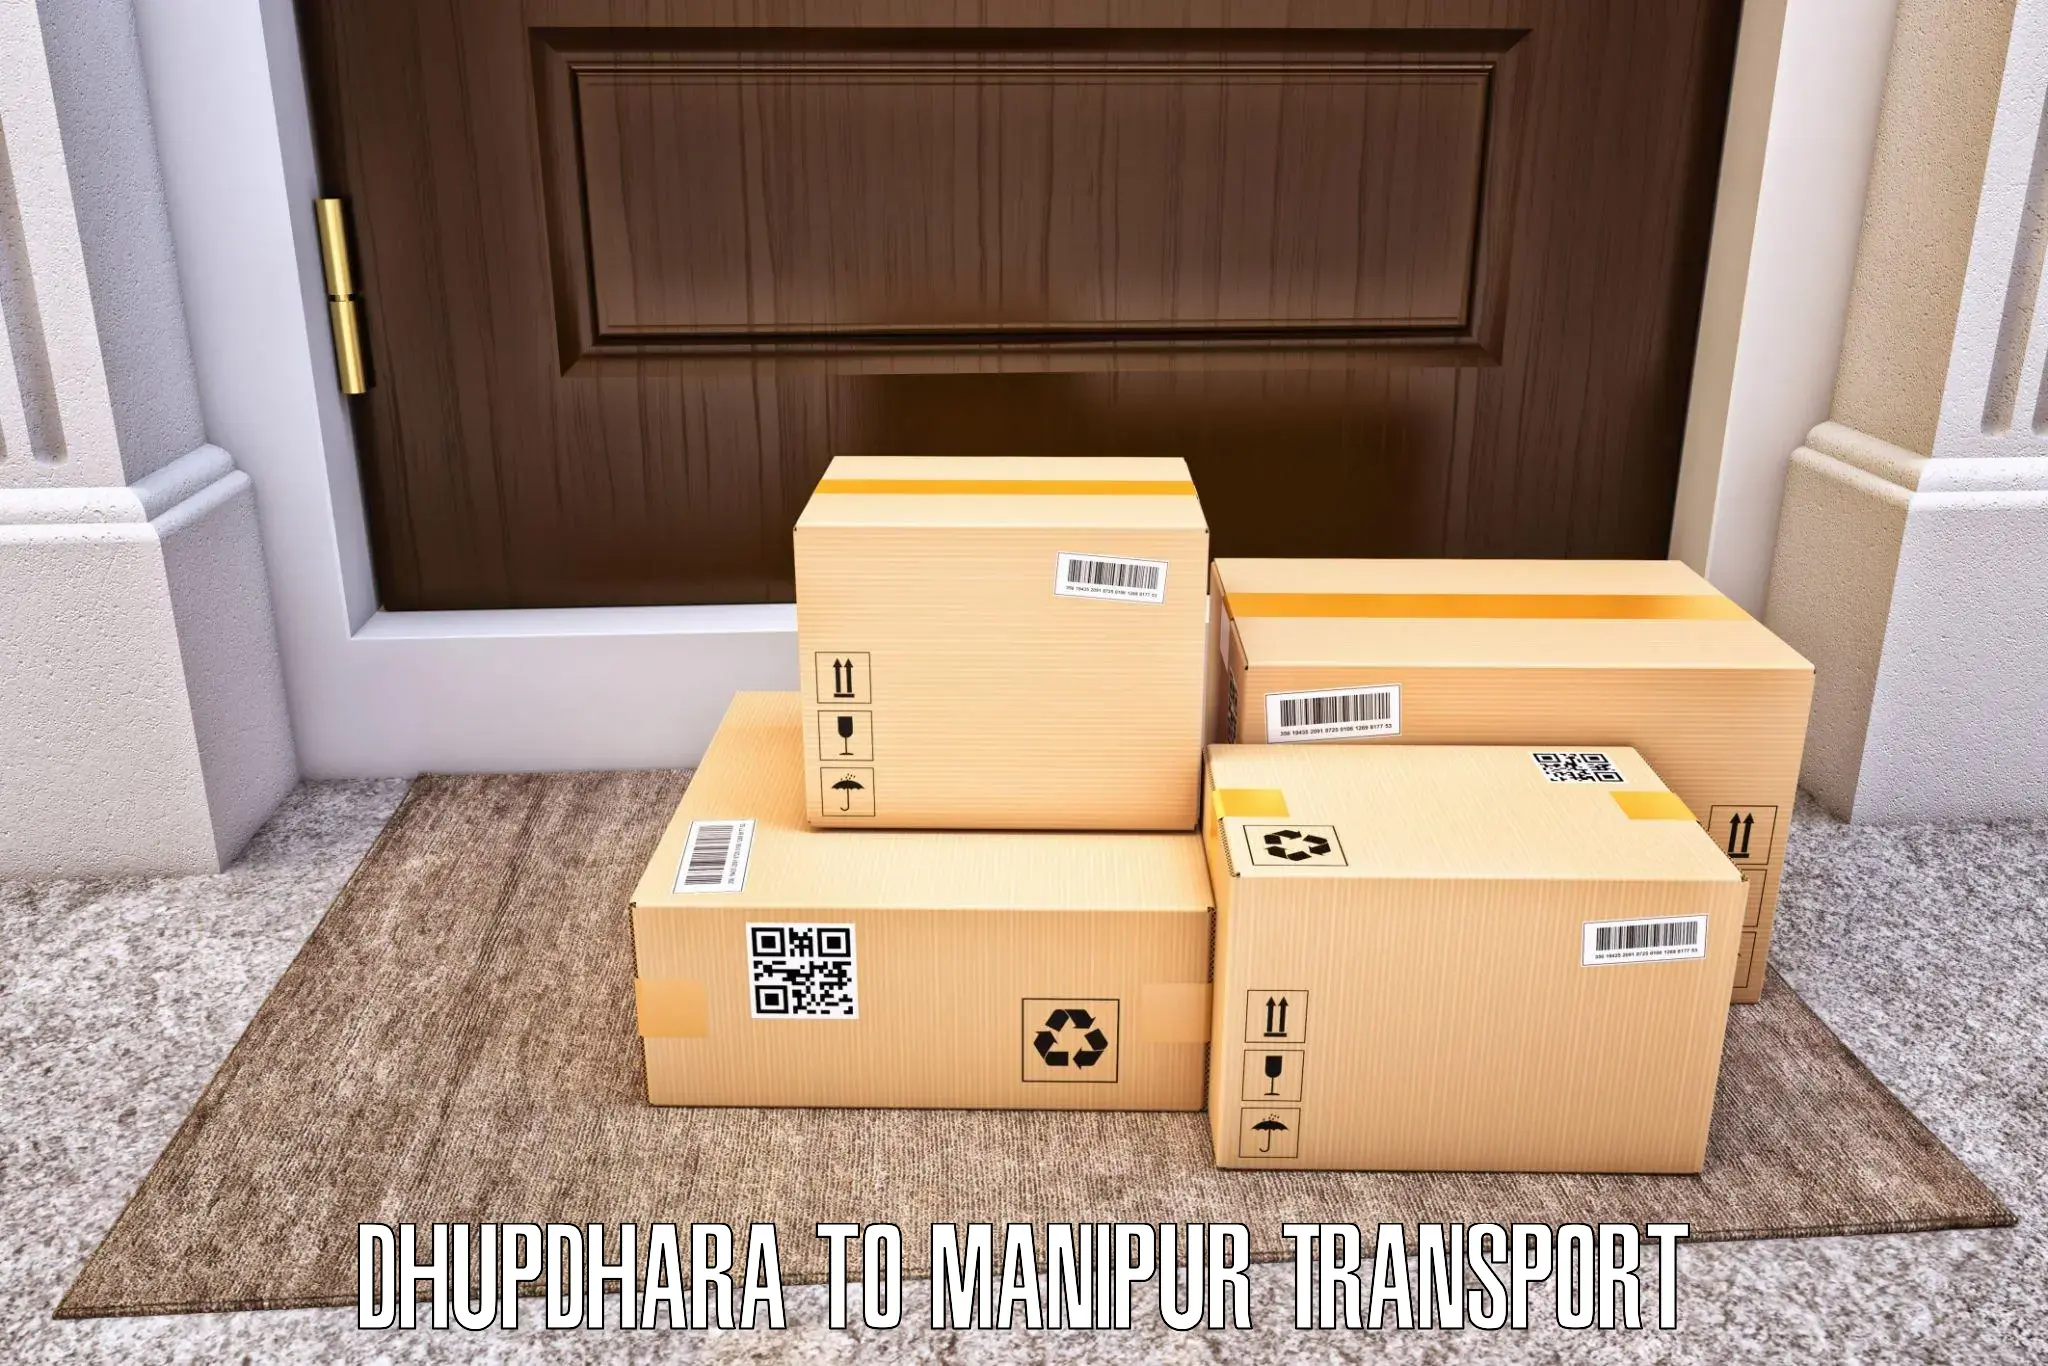 Furniture transport service Dhupdhara to IIIT Senapati